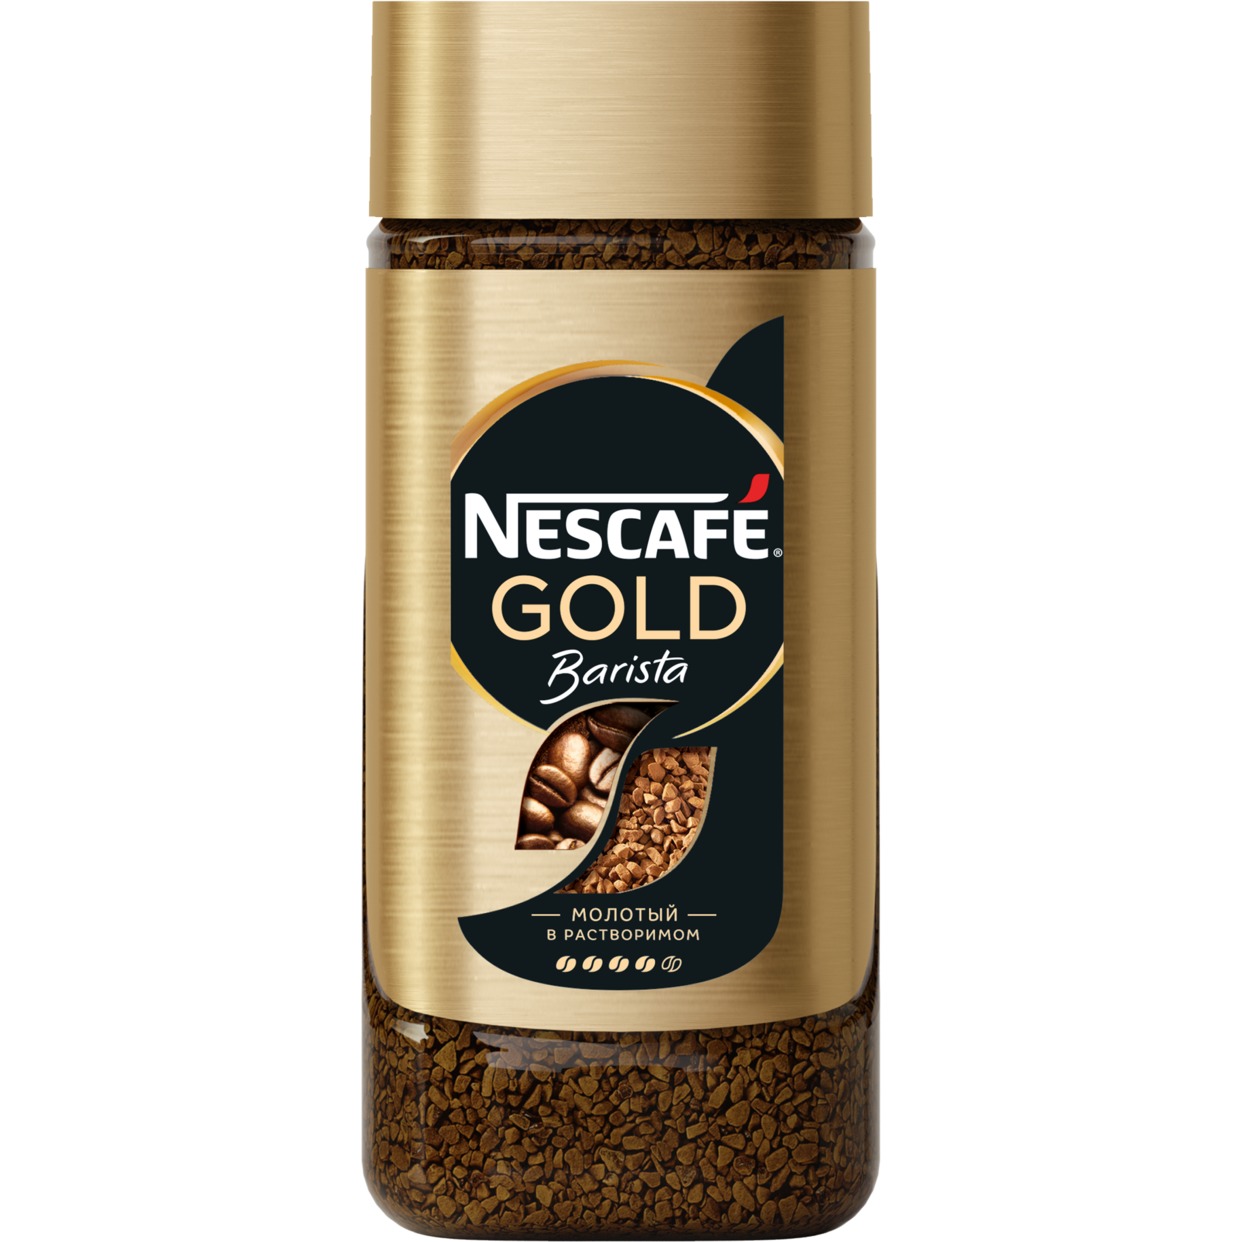 Кофе Nescafe Gold Barista, молотый в растворимом, 85 г по акции в Пятерочке